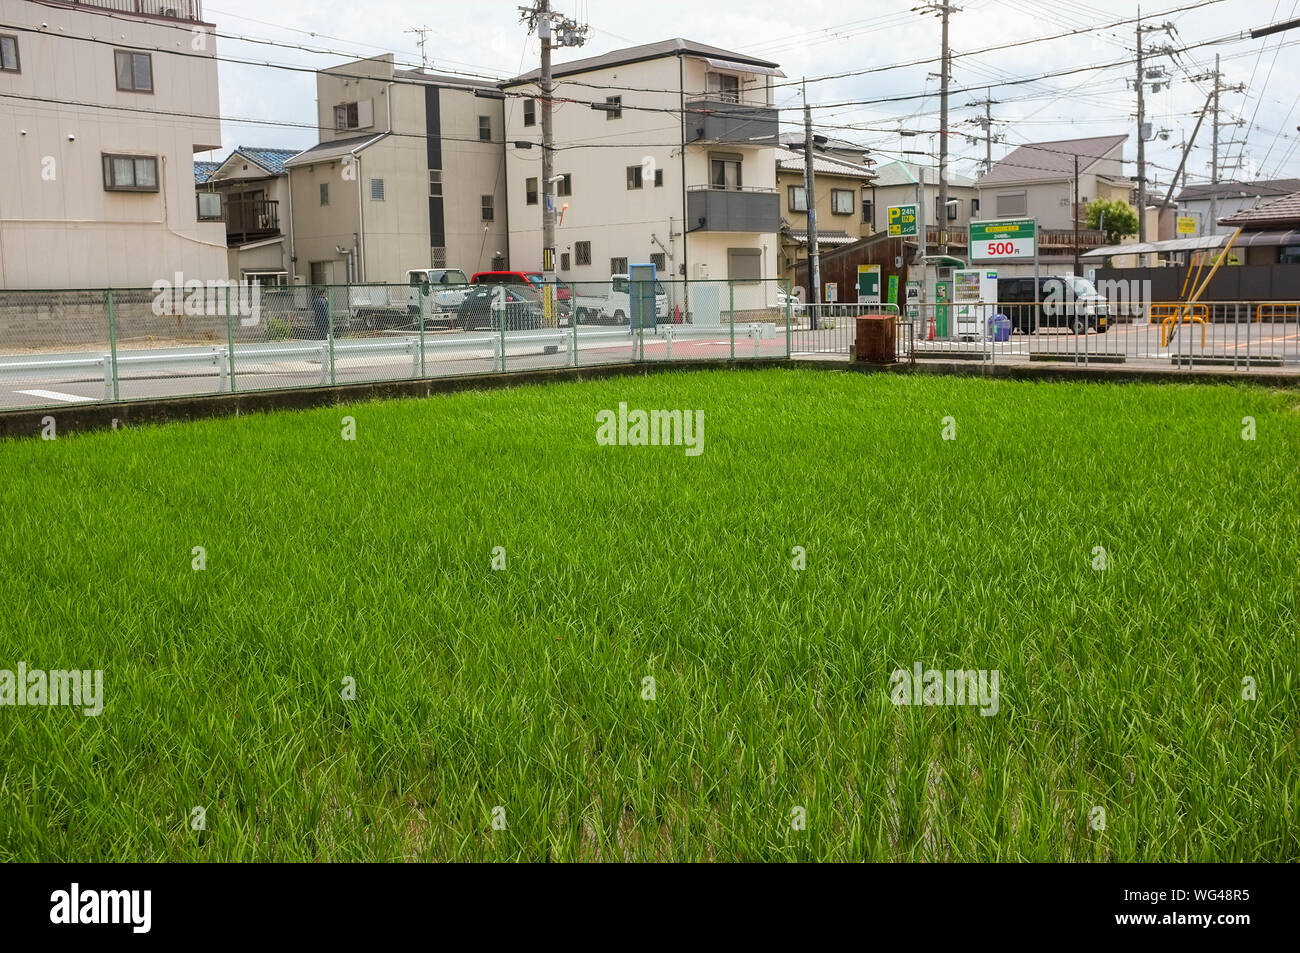 El arroz paddy o campos de arroz en zona urbana en Osaka, Japón. Foto de stock